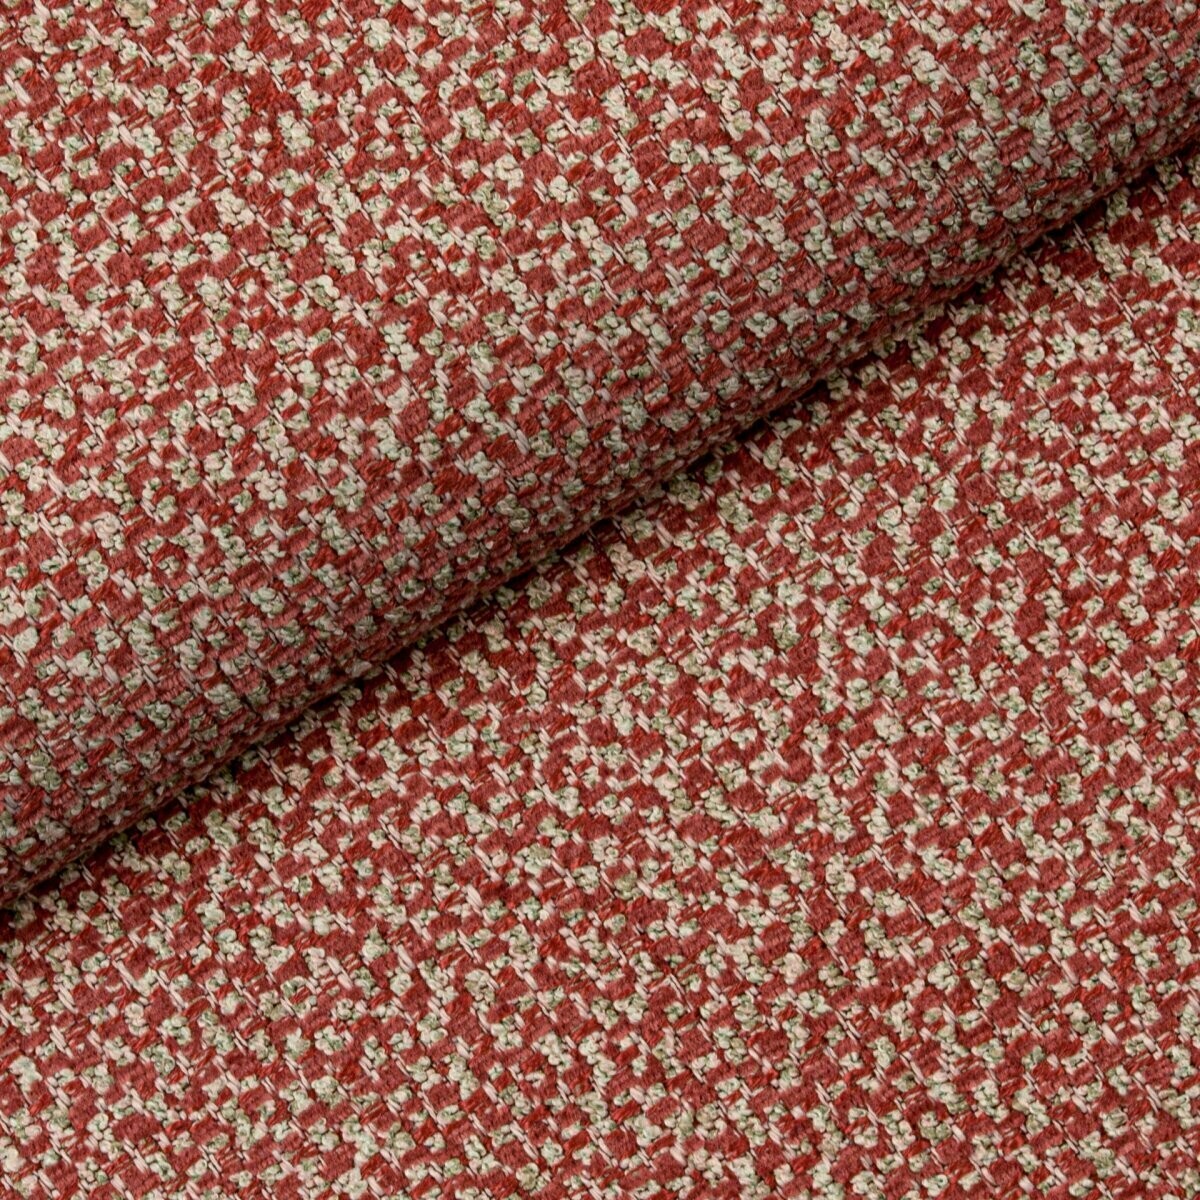 Wytrzymały materiał na kanapę, fotel, krzesła czy łóżko, Nebbia 14 Fargotex. Czerwony kolor tej tkaniny ożywi każde wnętrze.